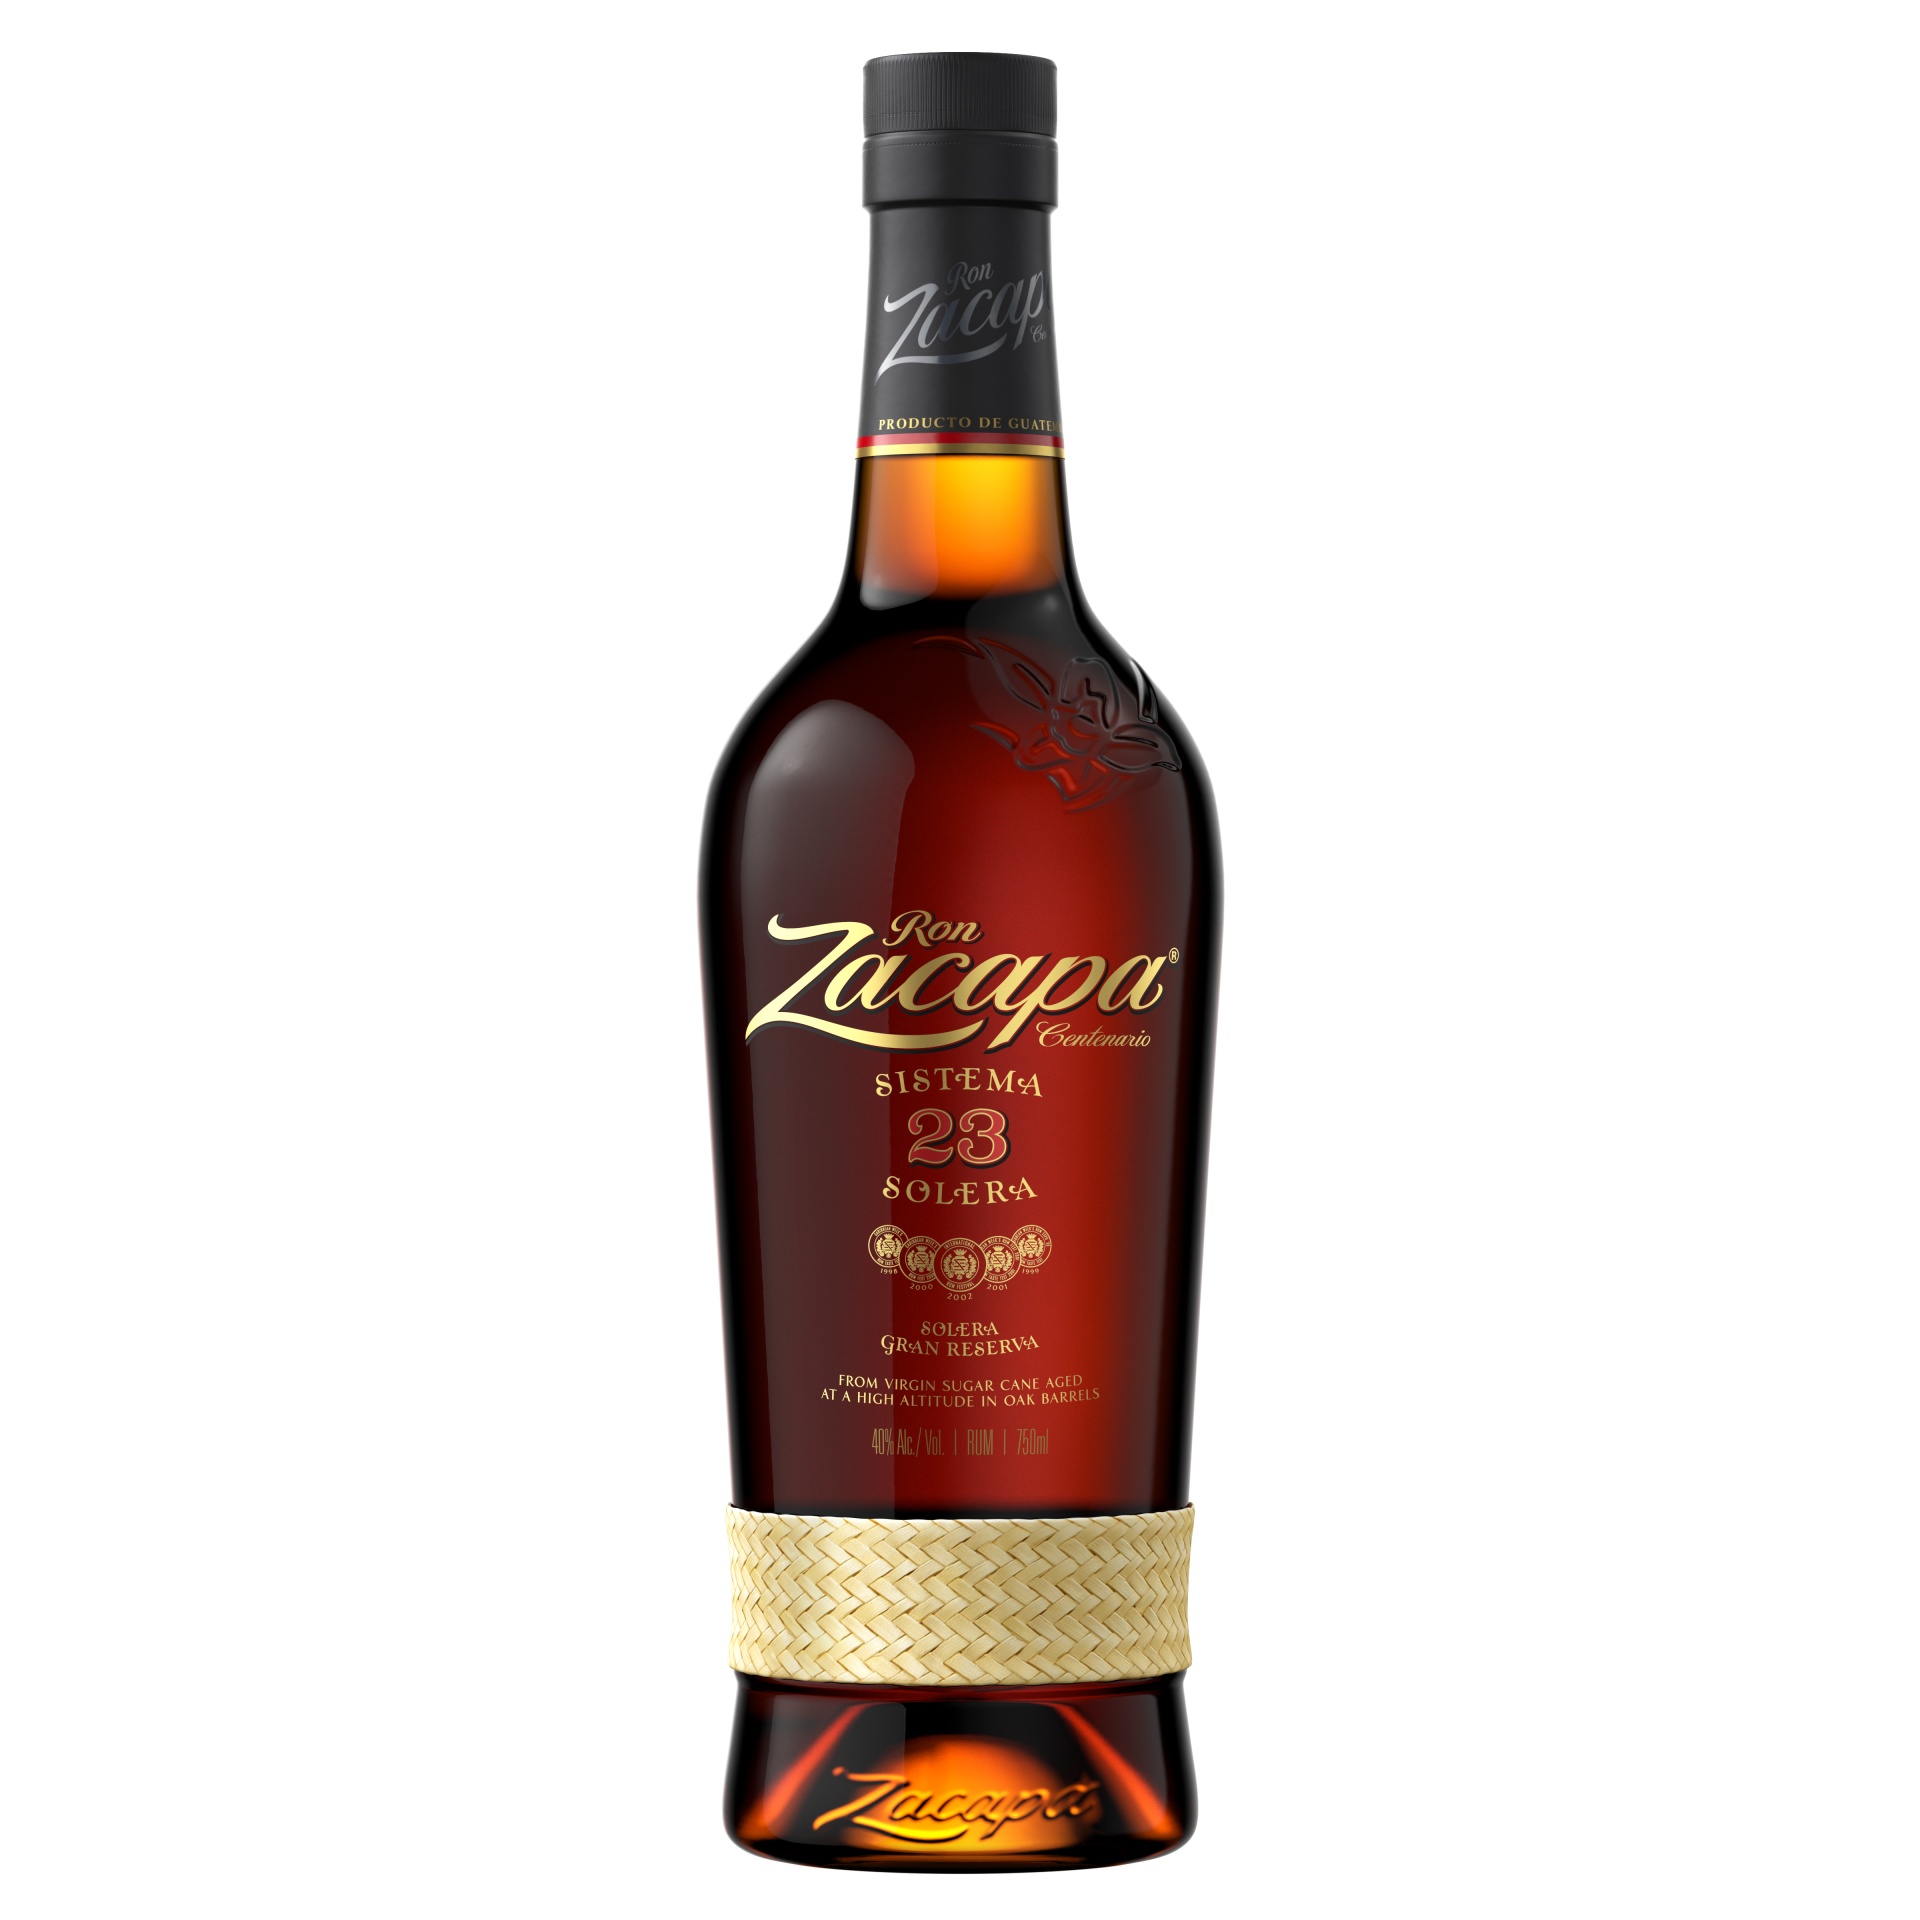 slide 1 of 2, Zacapa 23 Sistema Solera Rum, 750 ml